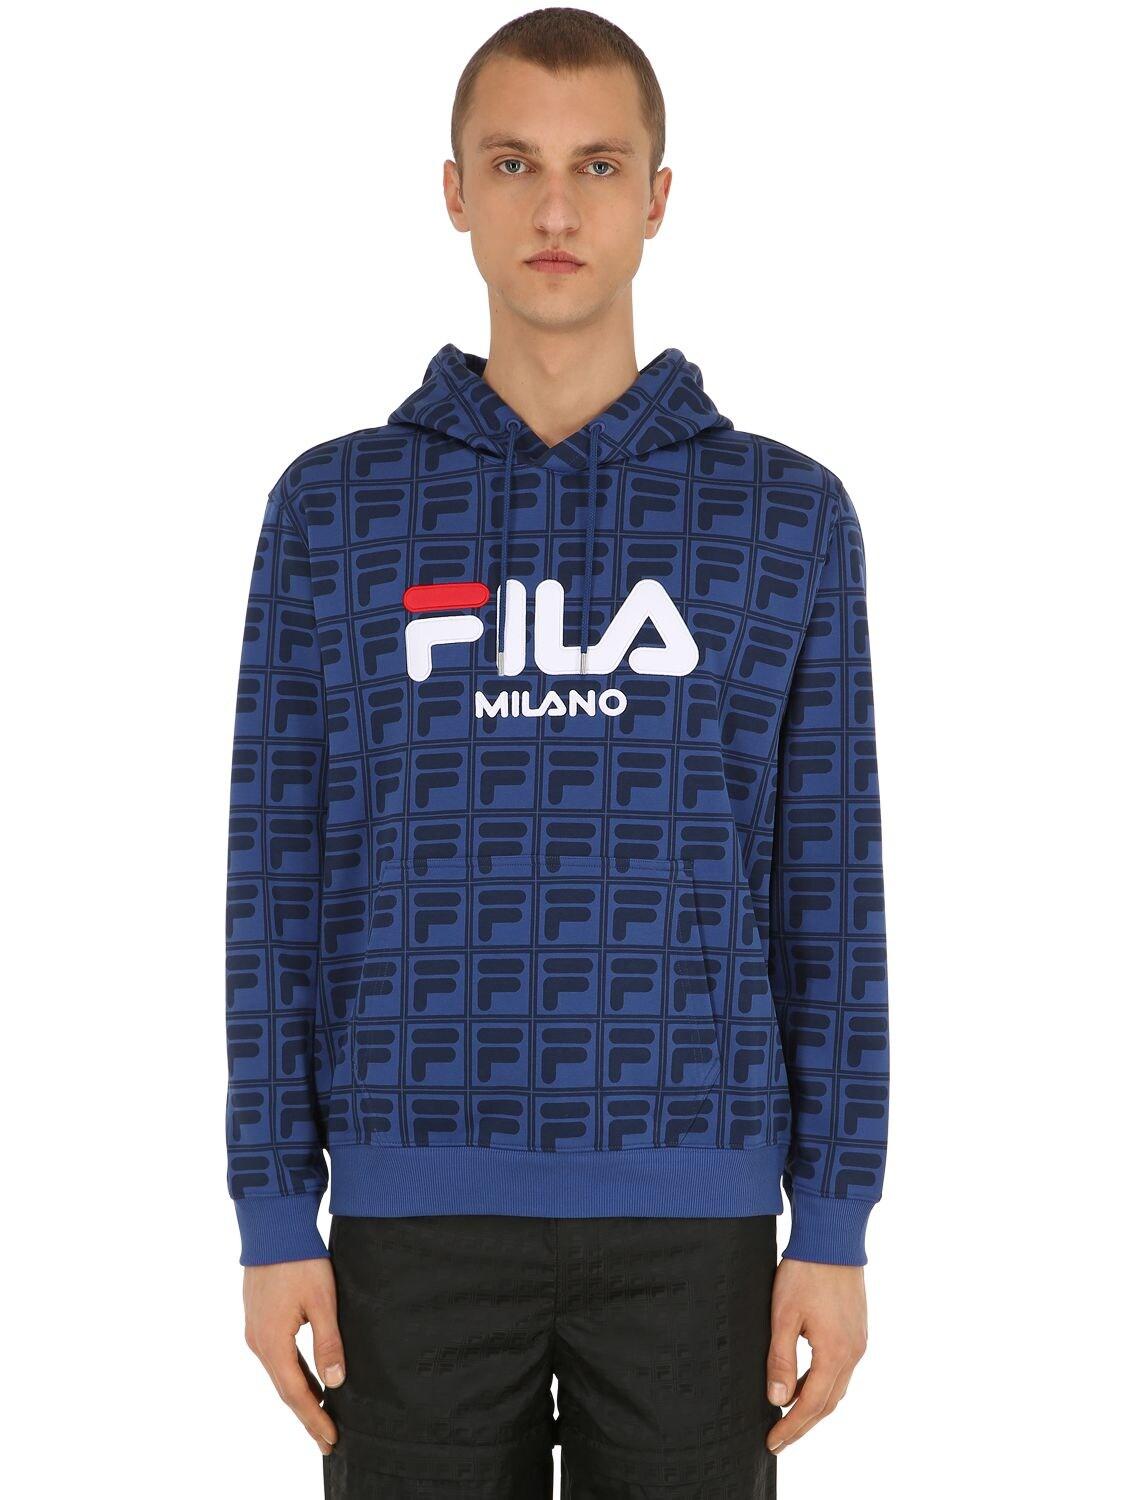 Fila Logo Printed Sweatshirt Hoodie in Blue for Men - Lyst